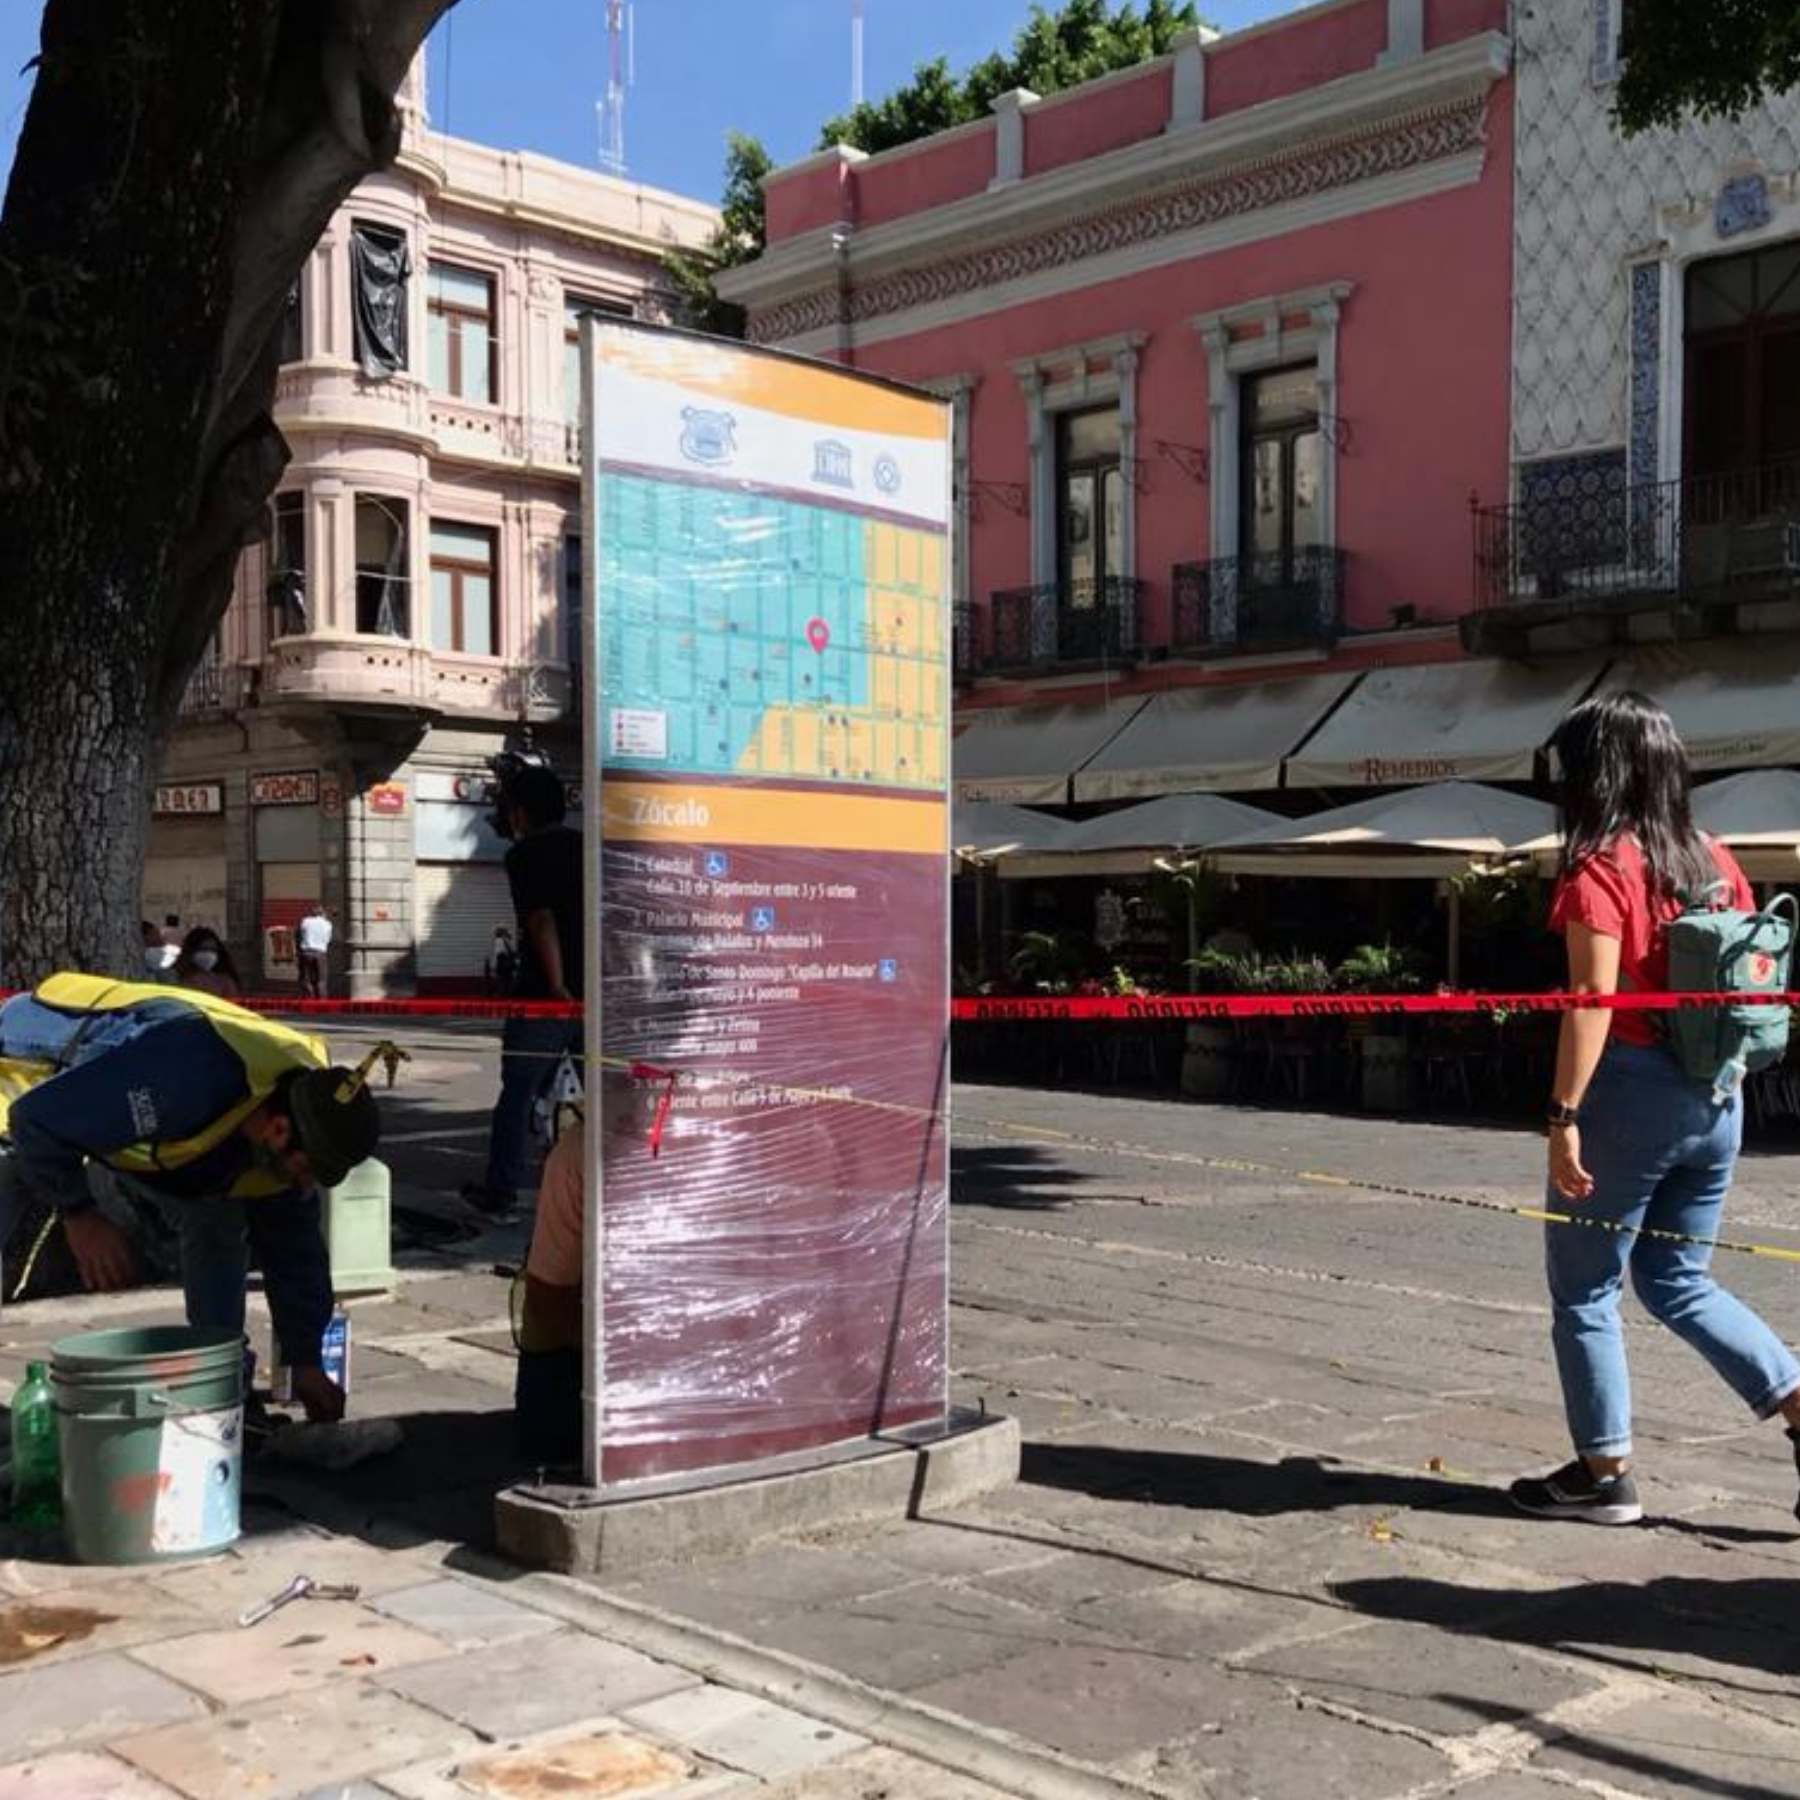 Dan mantenimiento a tótems y carteles del centro de Puebla